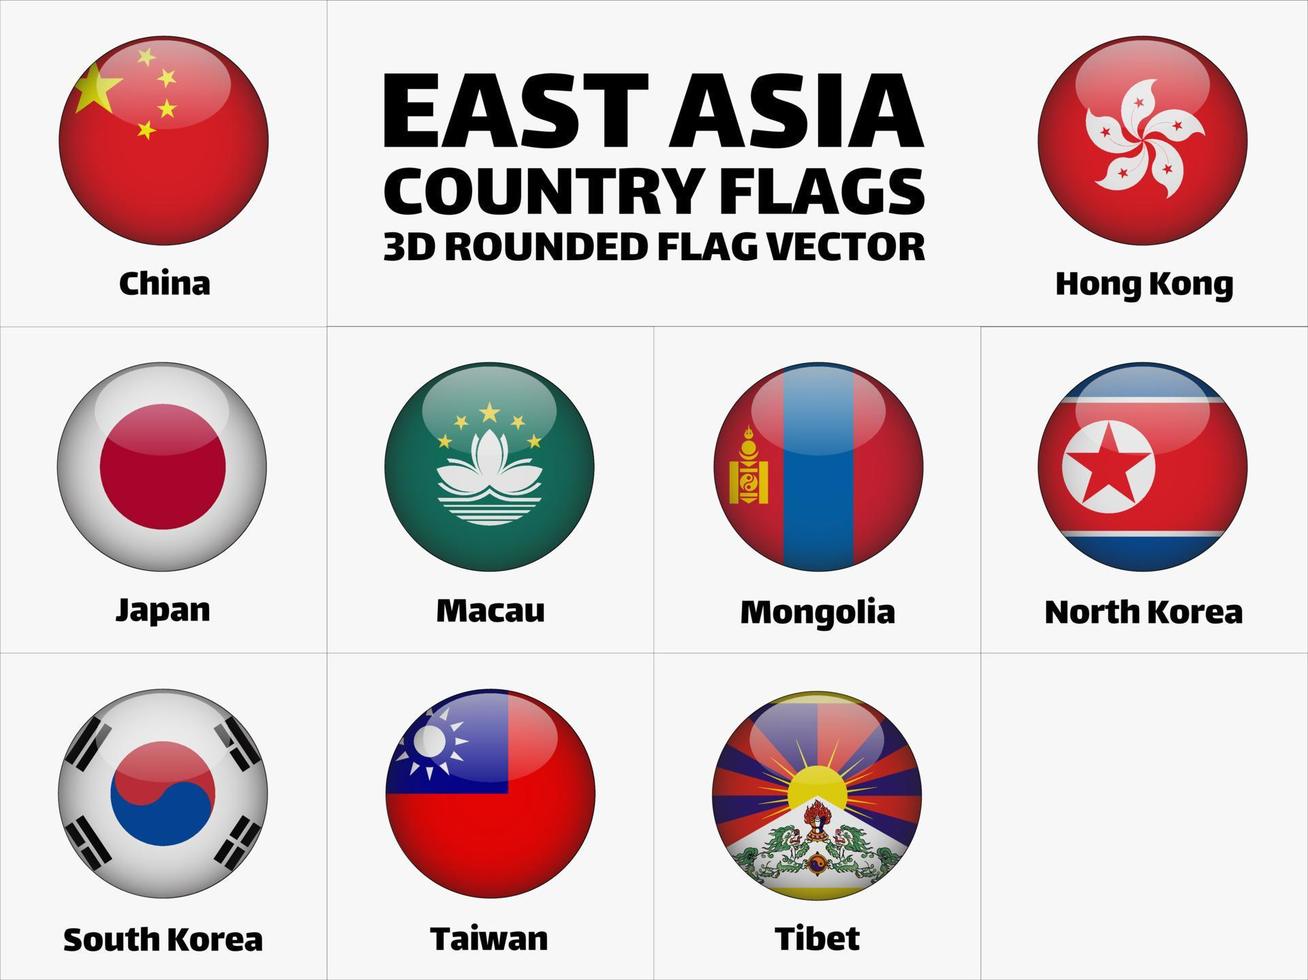 drapeaux de pays d'asie de l'est, vecteur de drapeau arrondi 3d